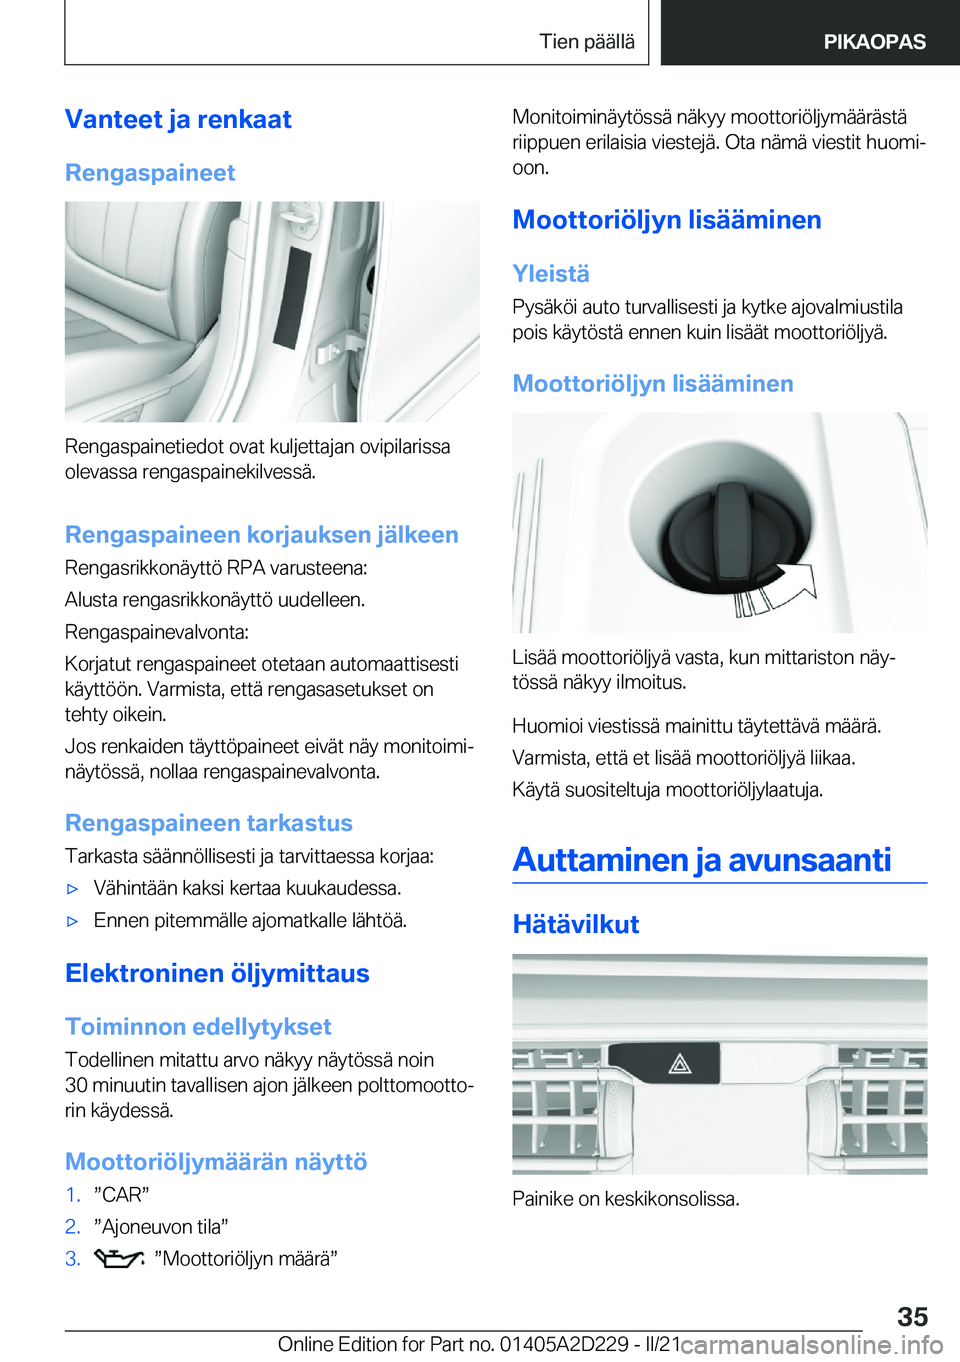 BMW X6 M 2021  Omistajan Käsikirja (in Finnish) �V�a�n�t�e�e�t��j�a��r�e�n�k�a�a�t
�R�e�n�g�a�s�p�a�i�n�e�e�t
�R�e�n�g�a�s�p�a�i�n�e�t�i�e�d�o�t��o�v�a�t��k�u�l�j�e�t�t�a�j�a�n��o�v�i�p�i�l�a�r�i�s�s�a �o�l�e�v�a�s�s�a��r�e�n�g�a�s�p�a�i�n�e�